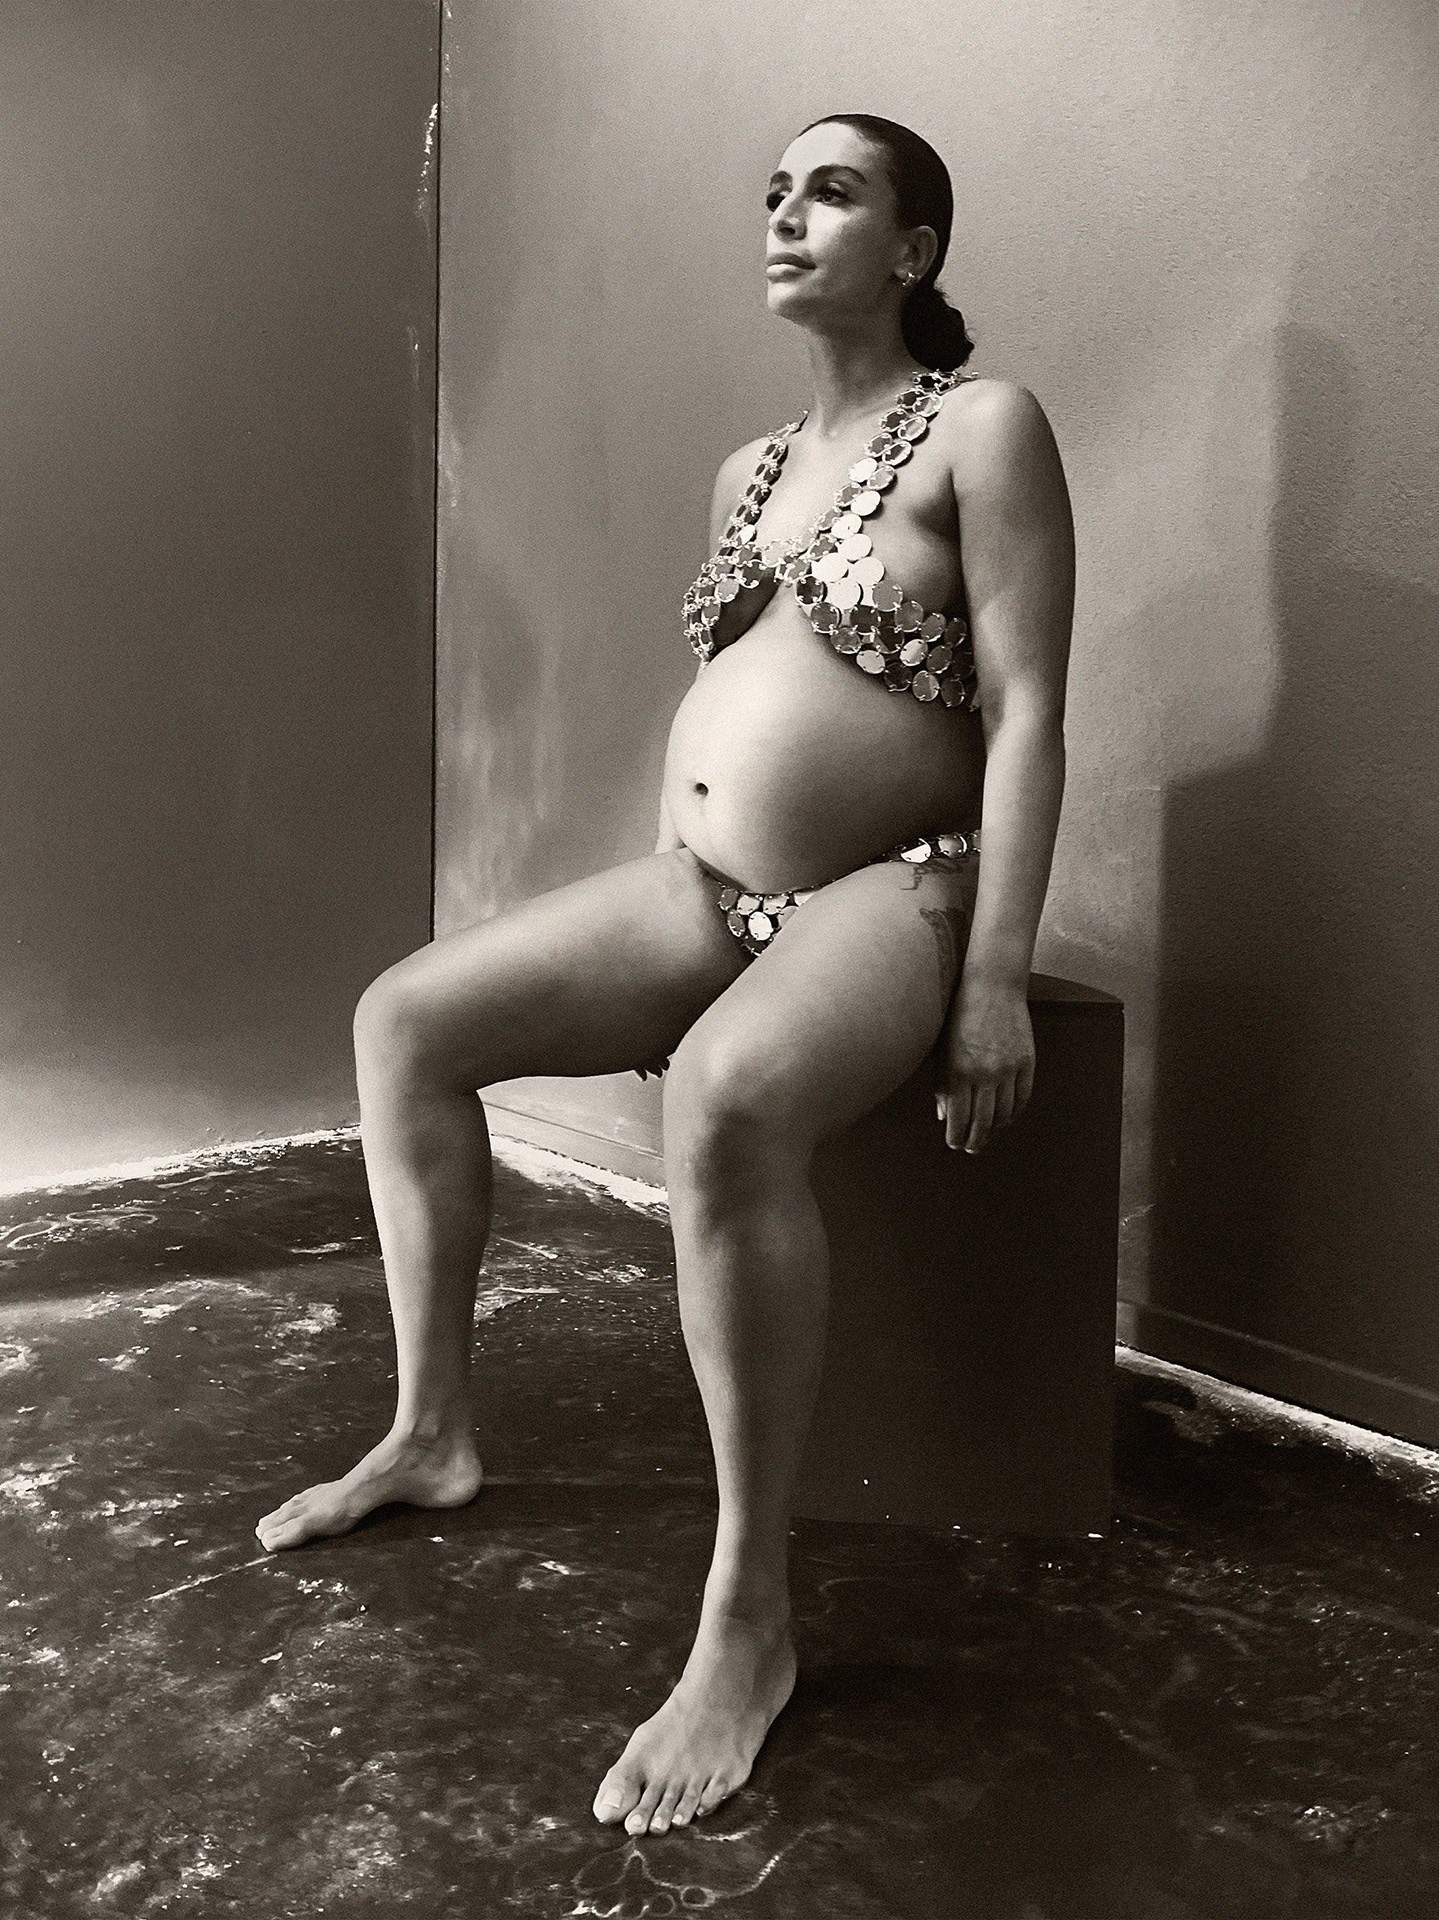 Sevdaliza pregnant Paul Kooiker photographer artist